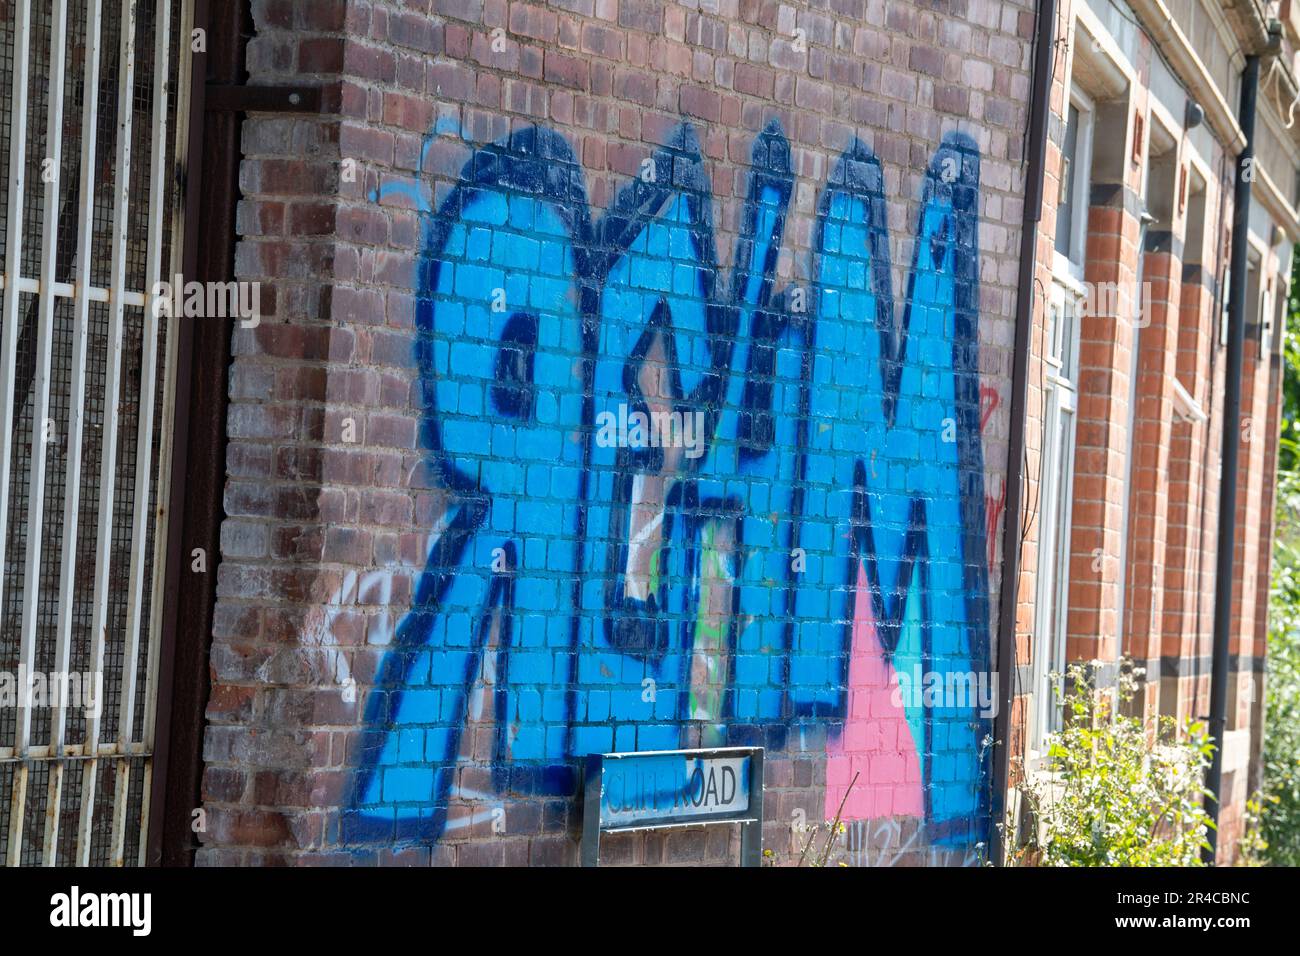 Graffiti sur Cliff Road à Nottingham City, Nottinghamshire Angleterre Royaume-Uni Banque D'Images